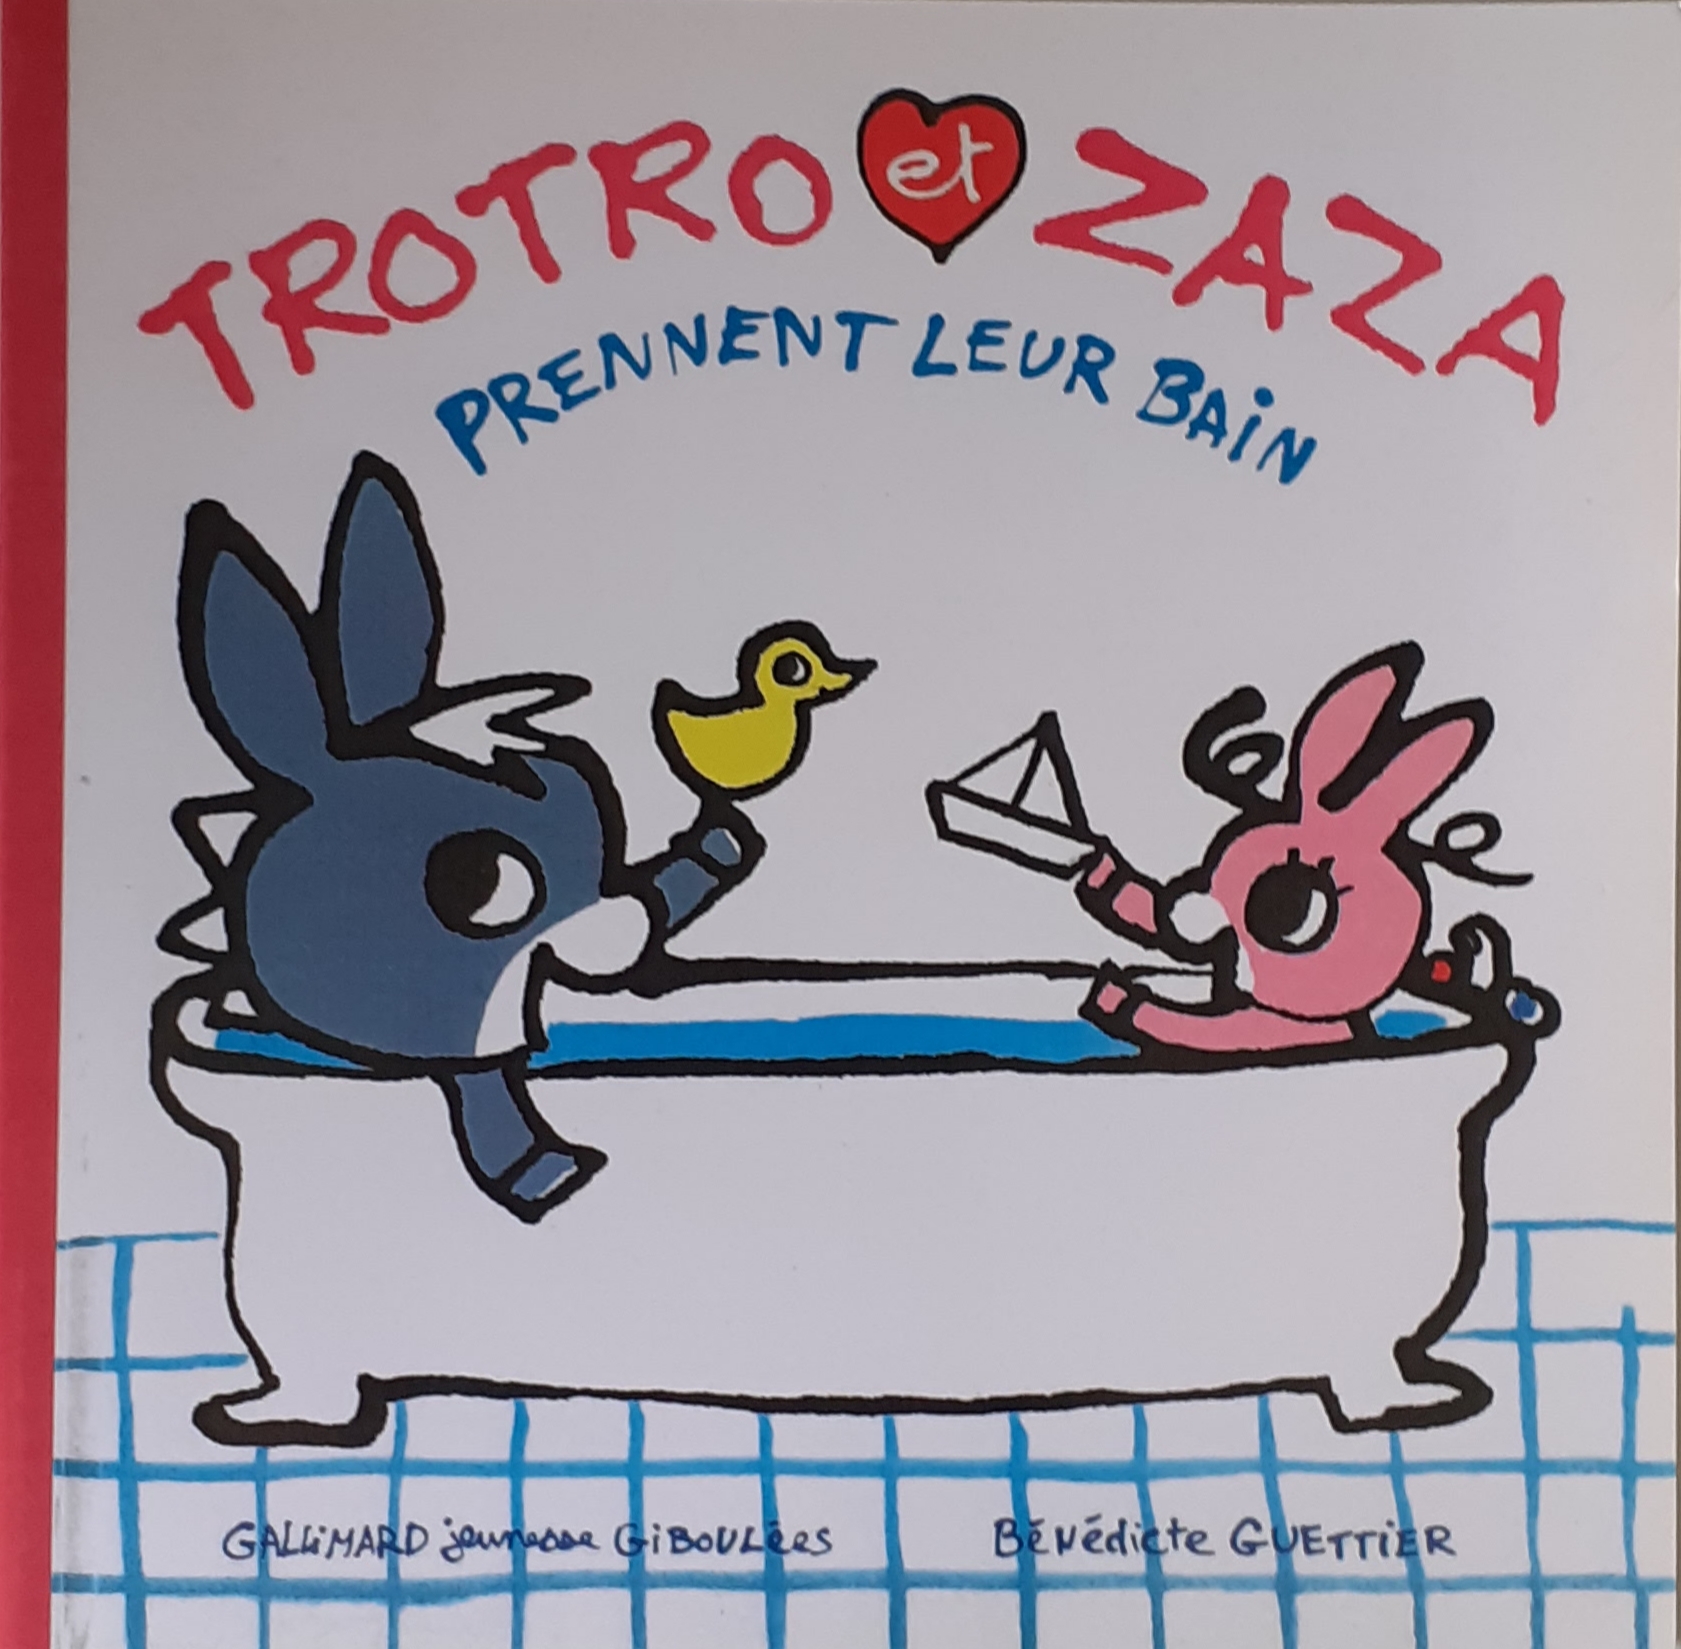 کتاب داستان فرانسه trotro et zaza به حمام بروید prennent leur bain